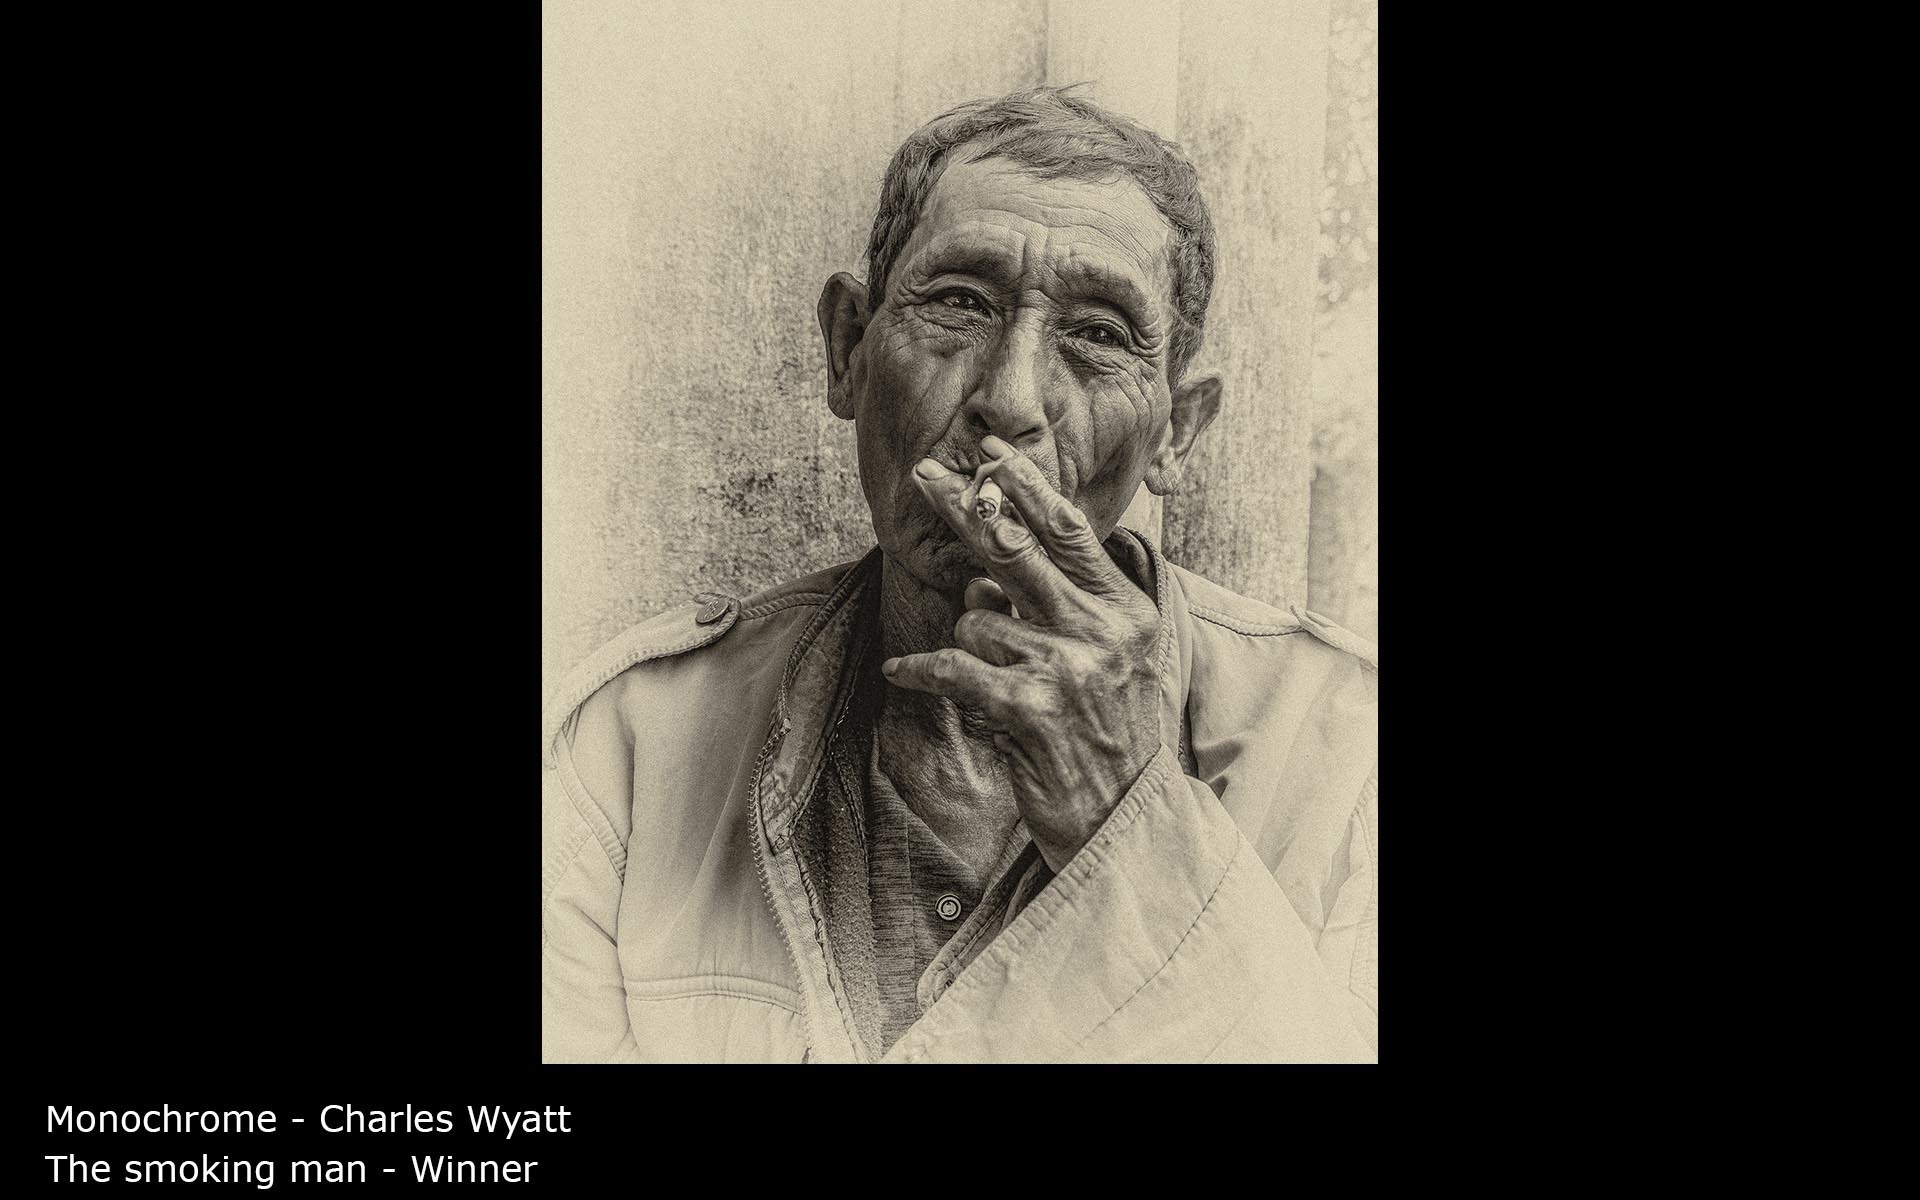 The smoking man - Charles Wyatt